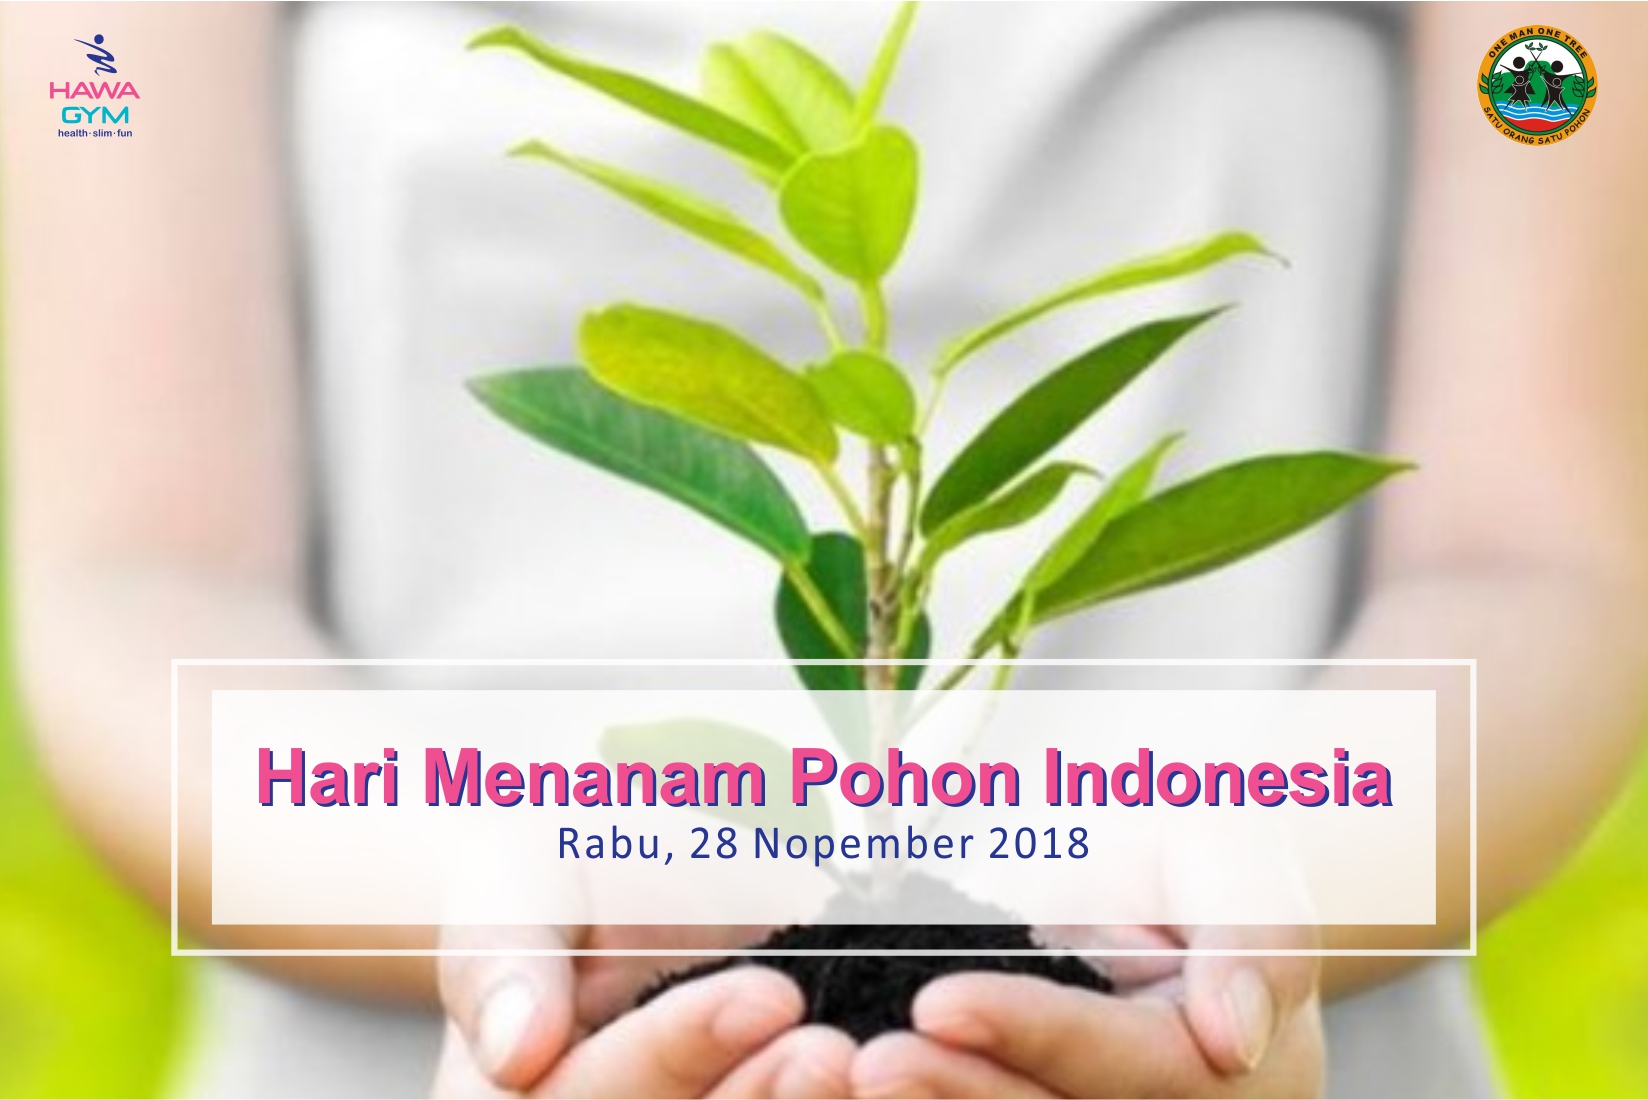 hari-menanam-pohon-indonesia-nopember-2018-by-hawagym